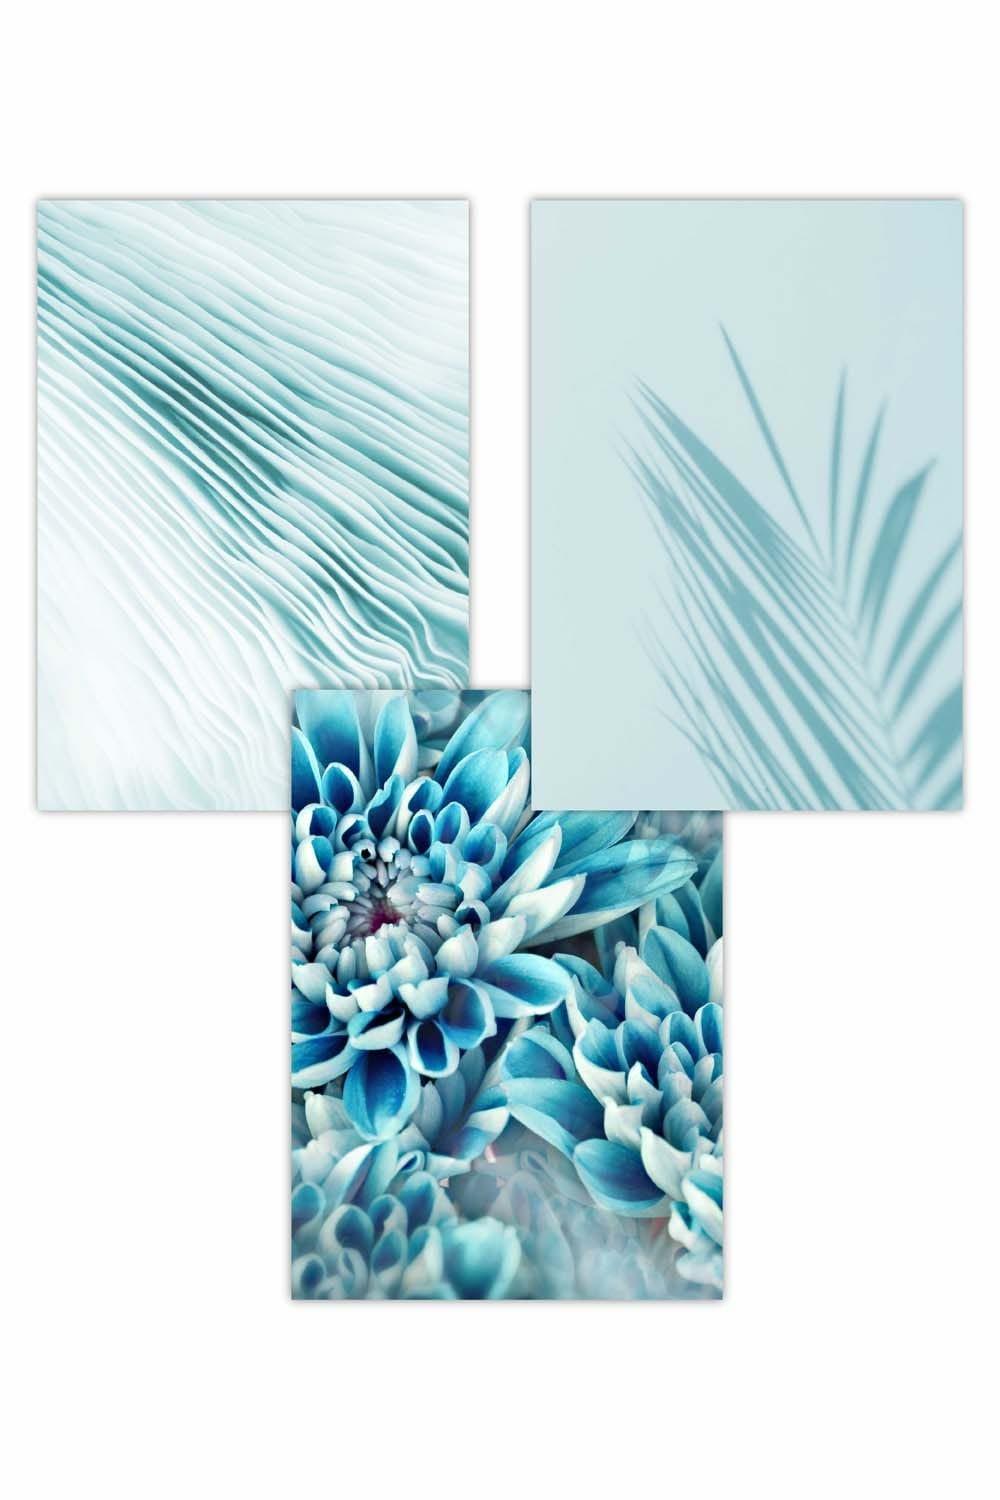 Set of 3 Abstract Aqua Blue Macro Floral Art Posters